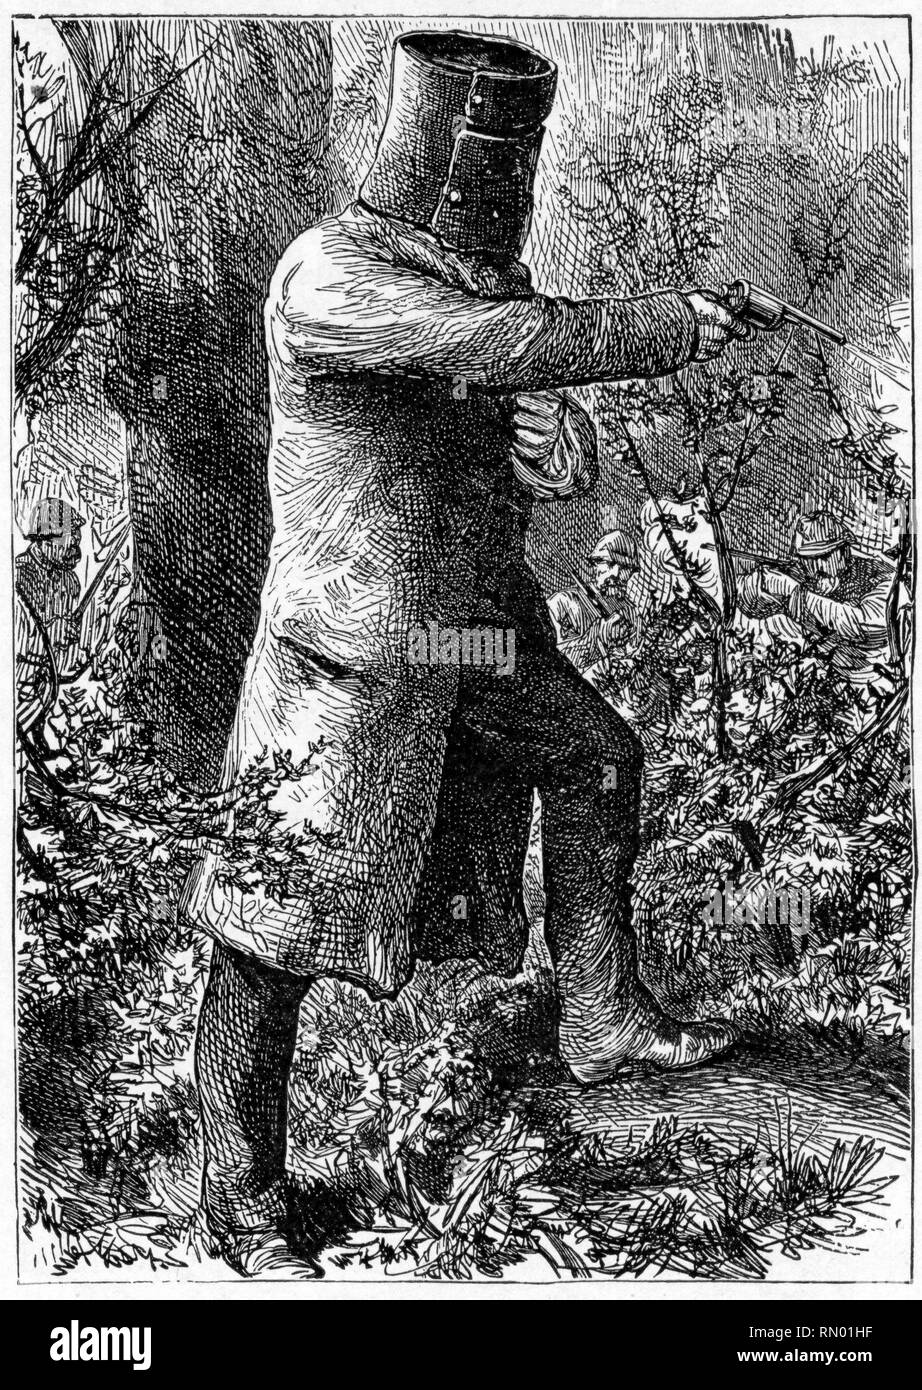 Die Bush Ranger, Ned Kelly, im Jahr 1880. Edward "Ned" Kelly (1854-1880), australischen Bushranger, Outlaw, bandenführer. Einer der letzten bushrangers, er ist am besten für Anzug von bulletproof Rüstung während seiner letzten Schusswechsel mit der Polizei bekannt. Stockfoto